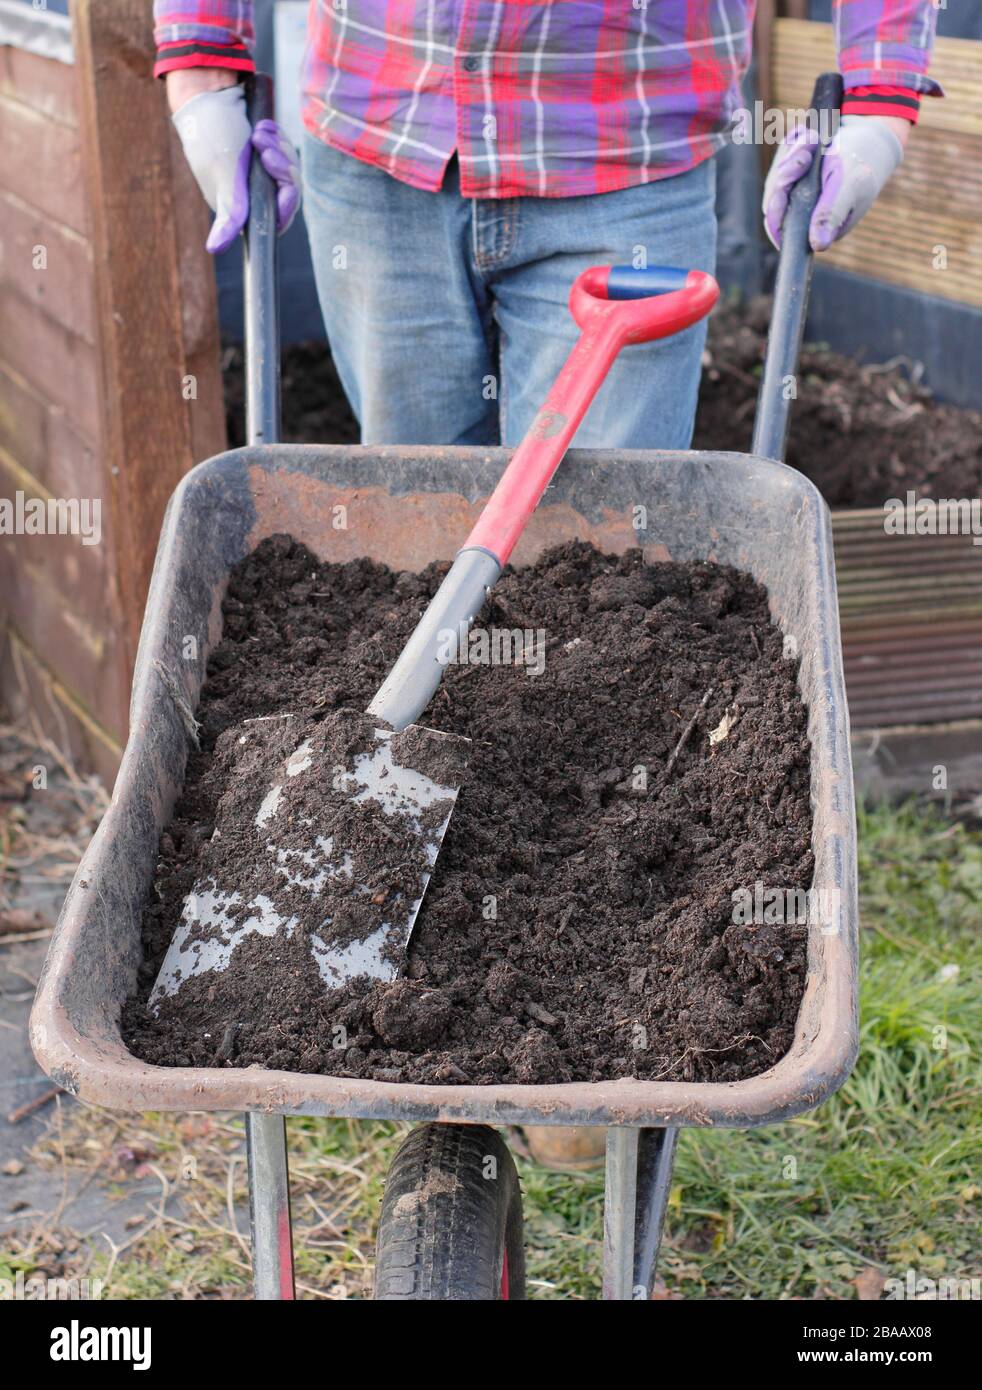 Hausgemachter Kompost aus Gemüseschrott, Pappe, Gras-Splitt und anderen biologisch abbaubaren Abfällen, in Schubkarren durch Kompostierbereich. Garten in Großbritannien Stockfoto